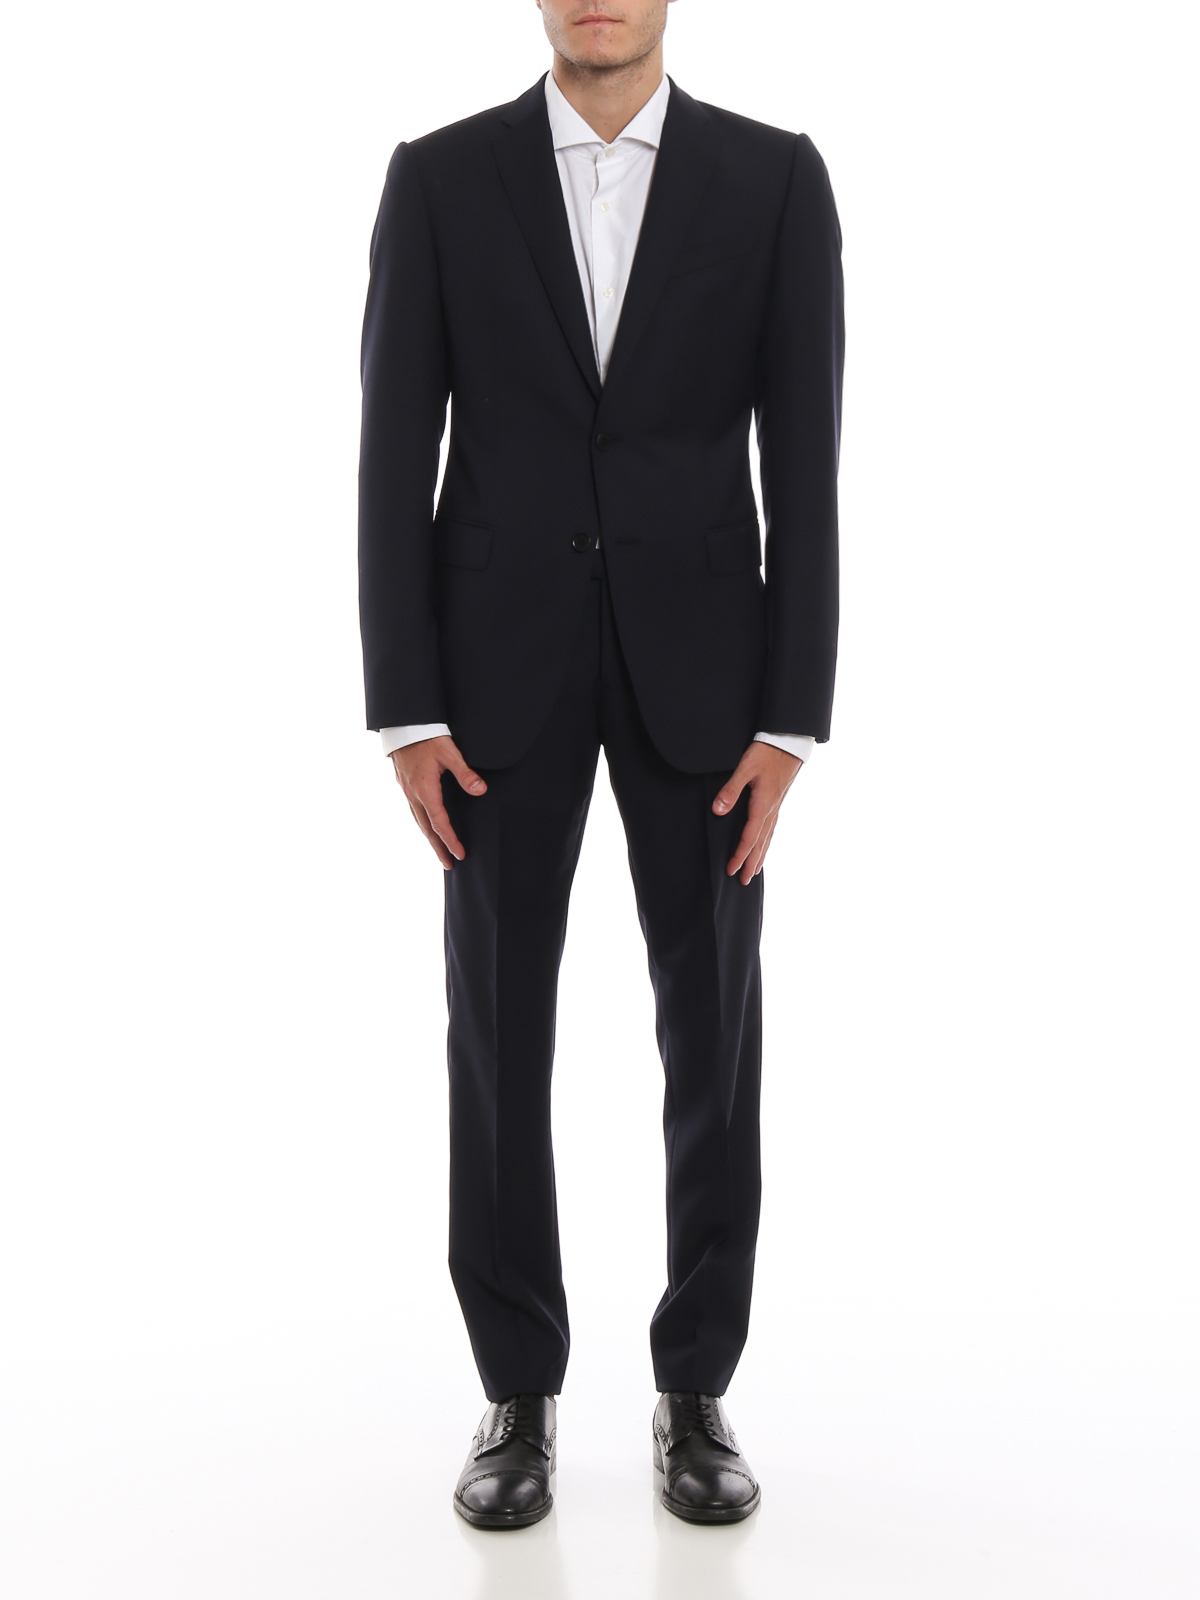 Emporio Armani - Dark blue check print suit - formal suits - 11VMET11601922